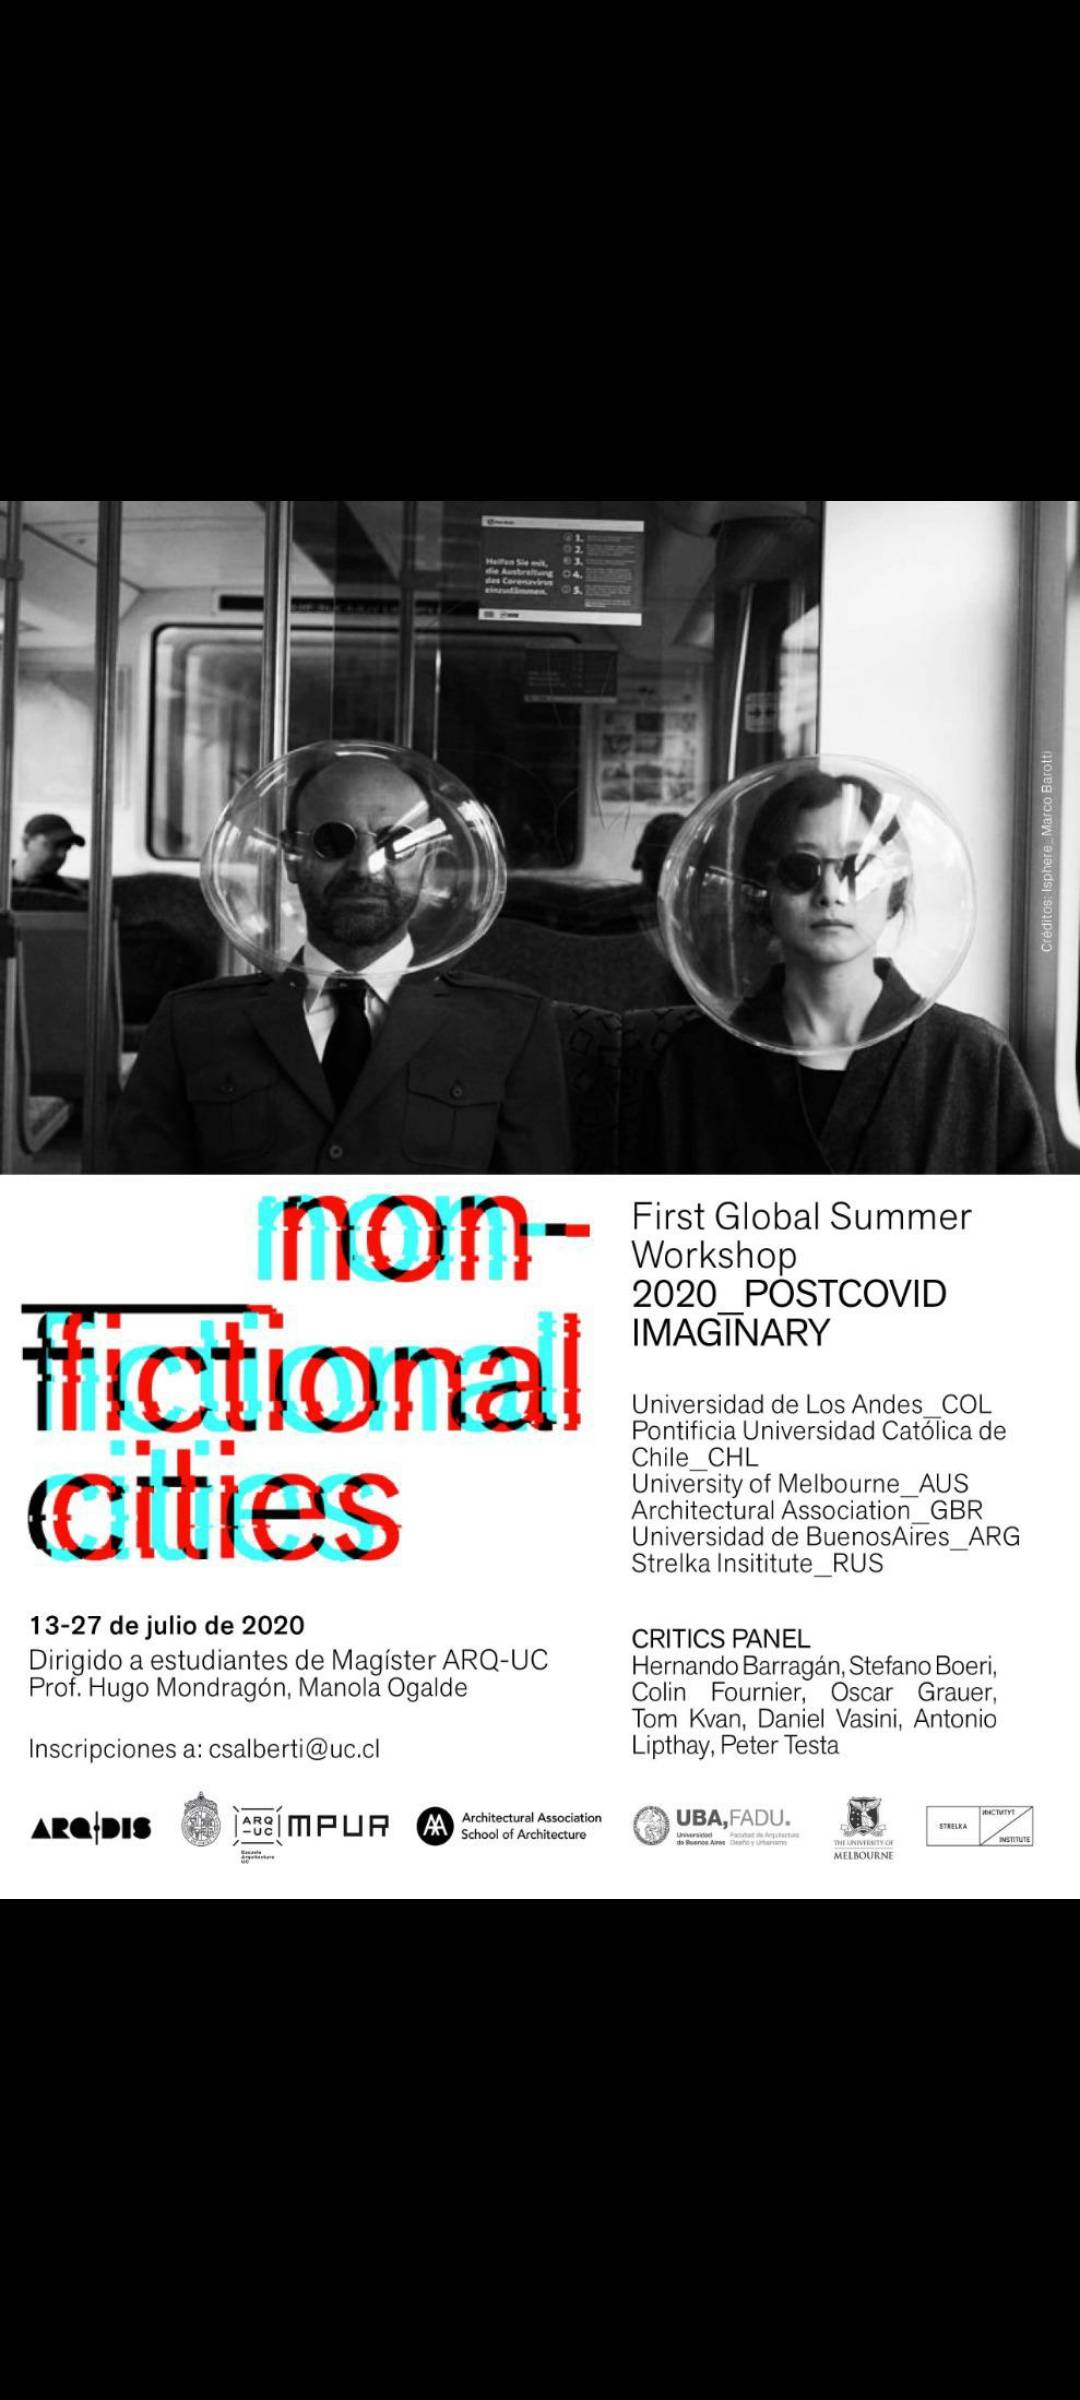 Workshop que realizará Hugo Mondragón entre el 13 y 27 de julio.